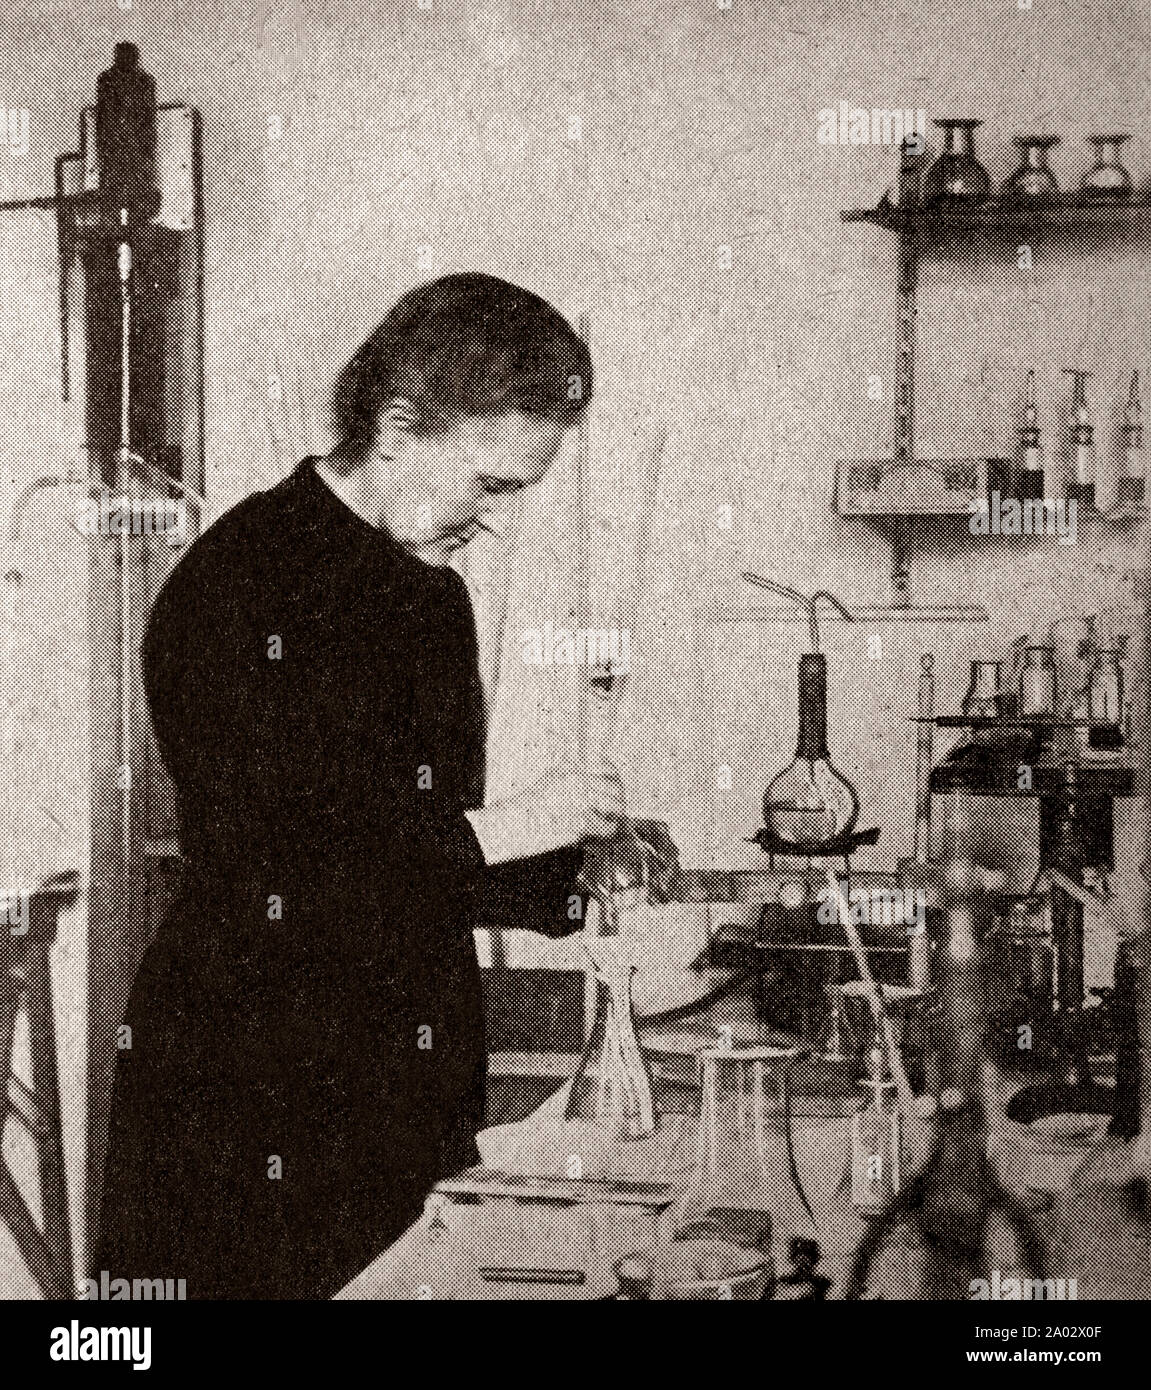 Die neueste Technik und Technologie aus den 1930er Jahren: ein Portrait von Marie Curie (1867 - 1934), der polnischen und der eingebürgerten - der französische Physiker und Chemiker, der bahnbrechende Forschung auf Radioaktivität durchgeführt. Sie war die erste Frau, die den Nobelpreis zu gewinnen, ist die einzige Frau, die den Nobelpreis zweimal zu gewinnen, und ist die einzige Person den Nobelpreis in zwei verschiedenen wissenschaftlichen Bereichen zu gewinnen. Stockfoto